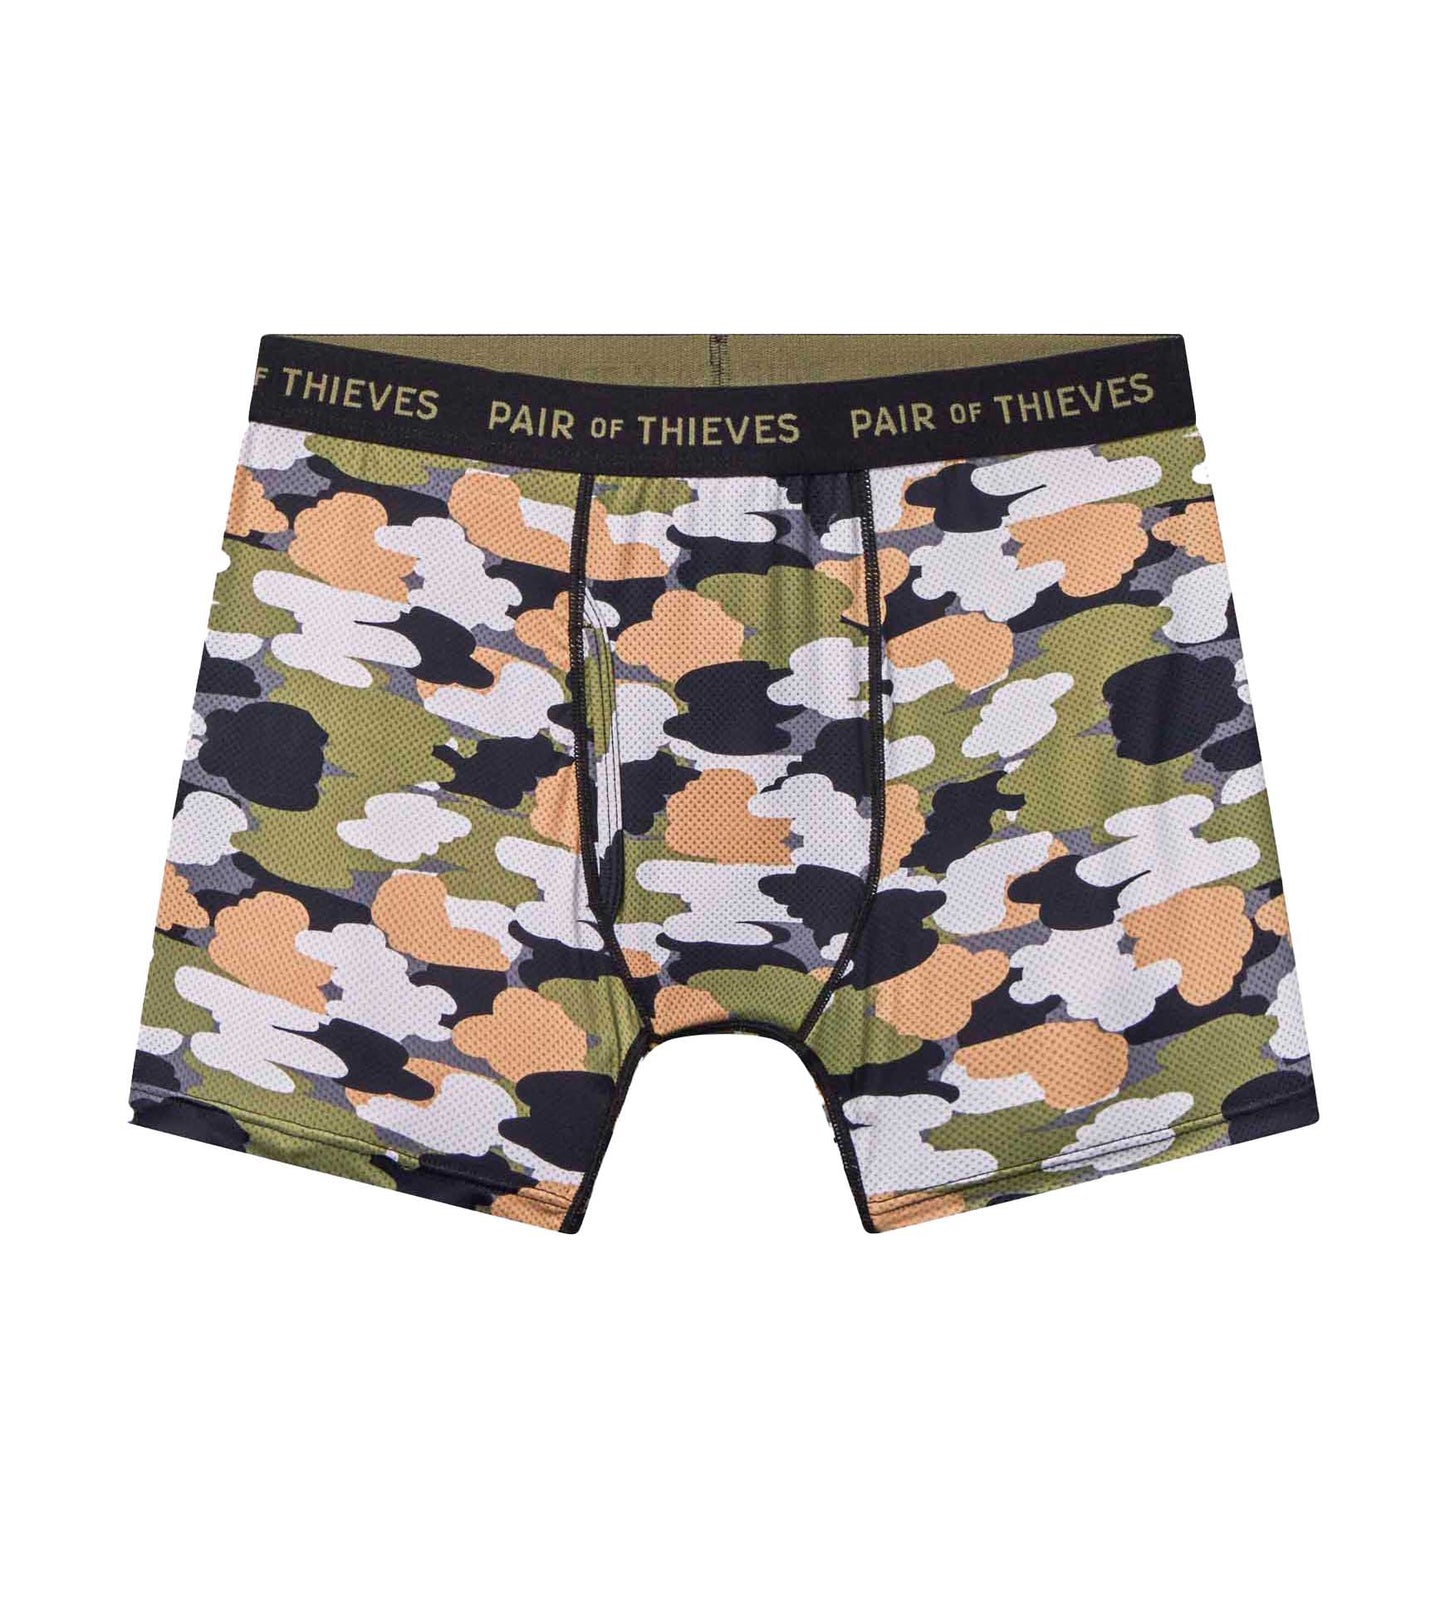 Pair of Thieves Super Fit Underwear for Men Pack - 2 Nederland